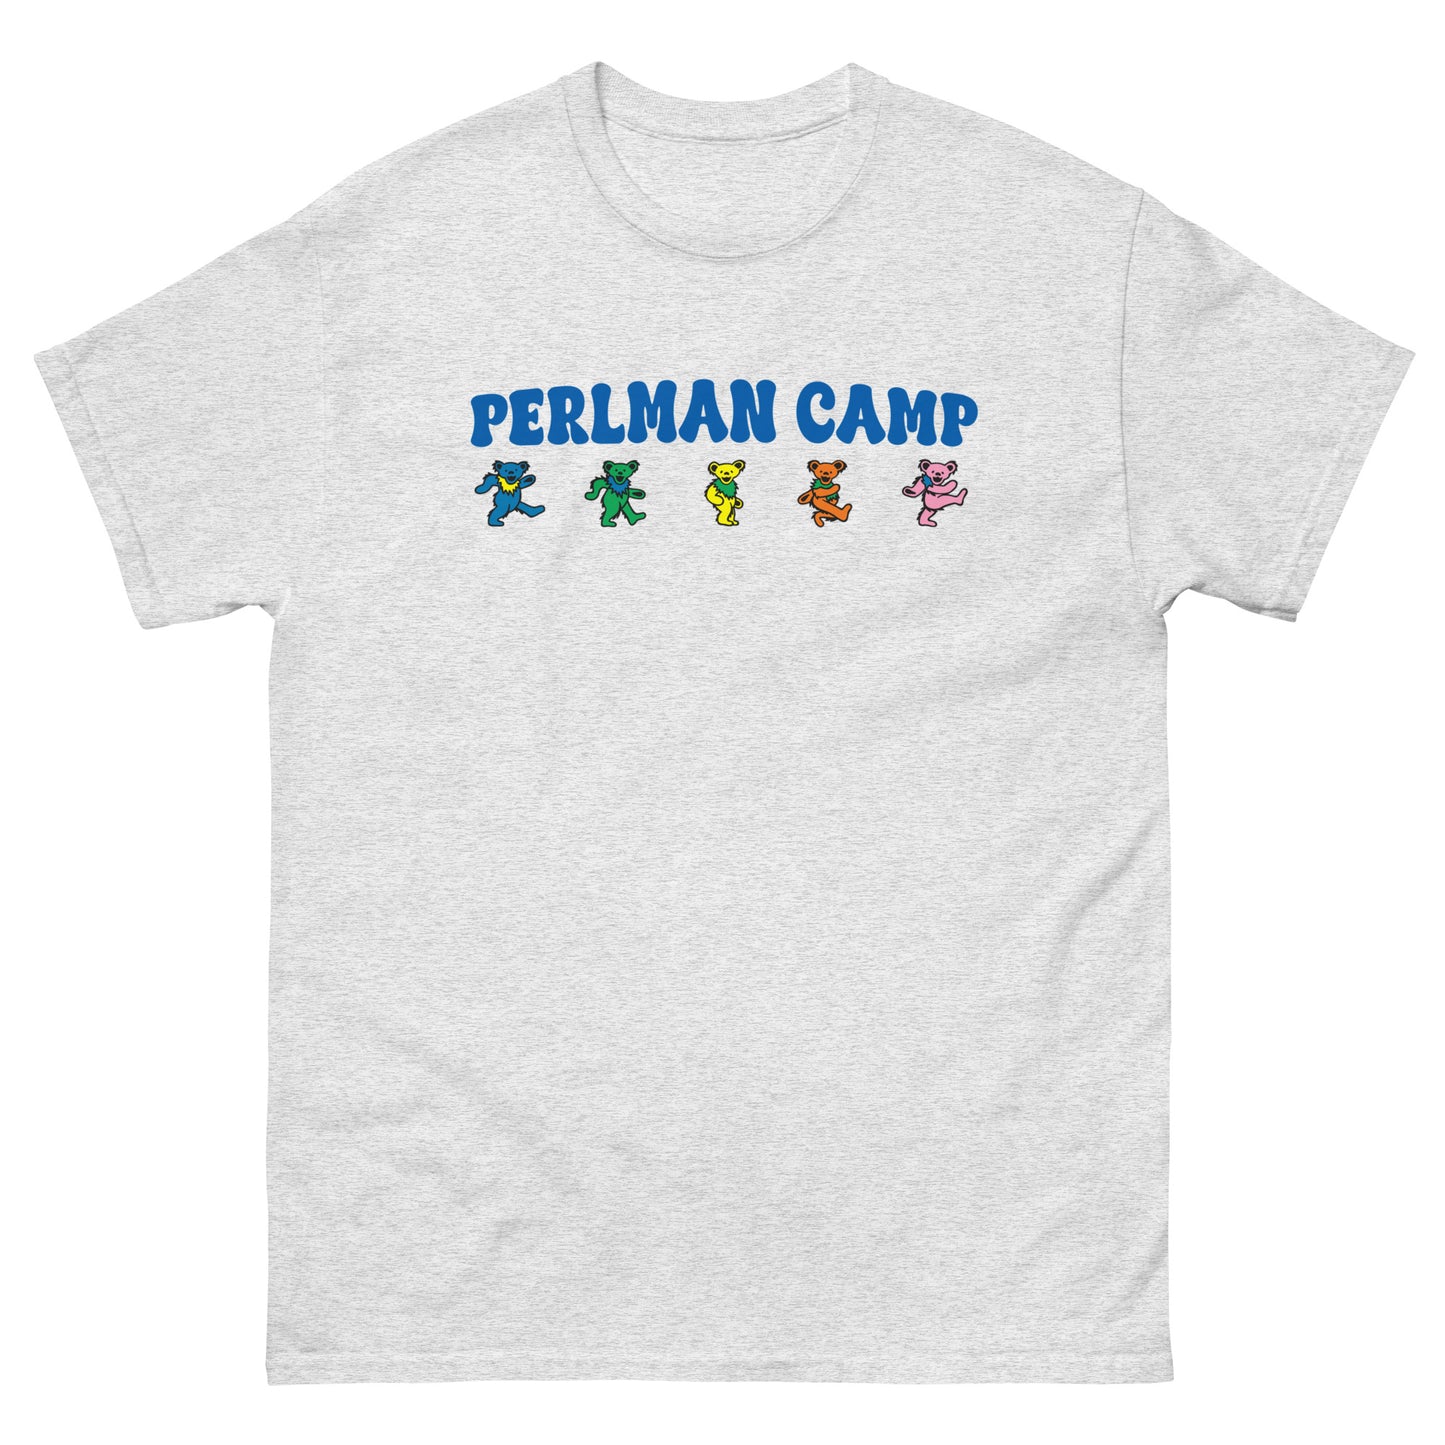 Perlman Camp Grateful Dead classic tee